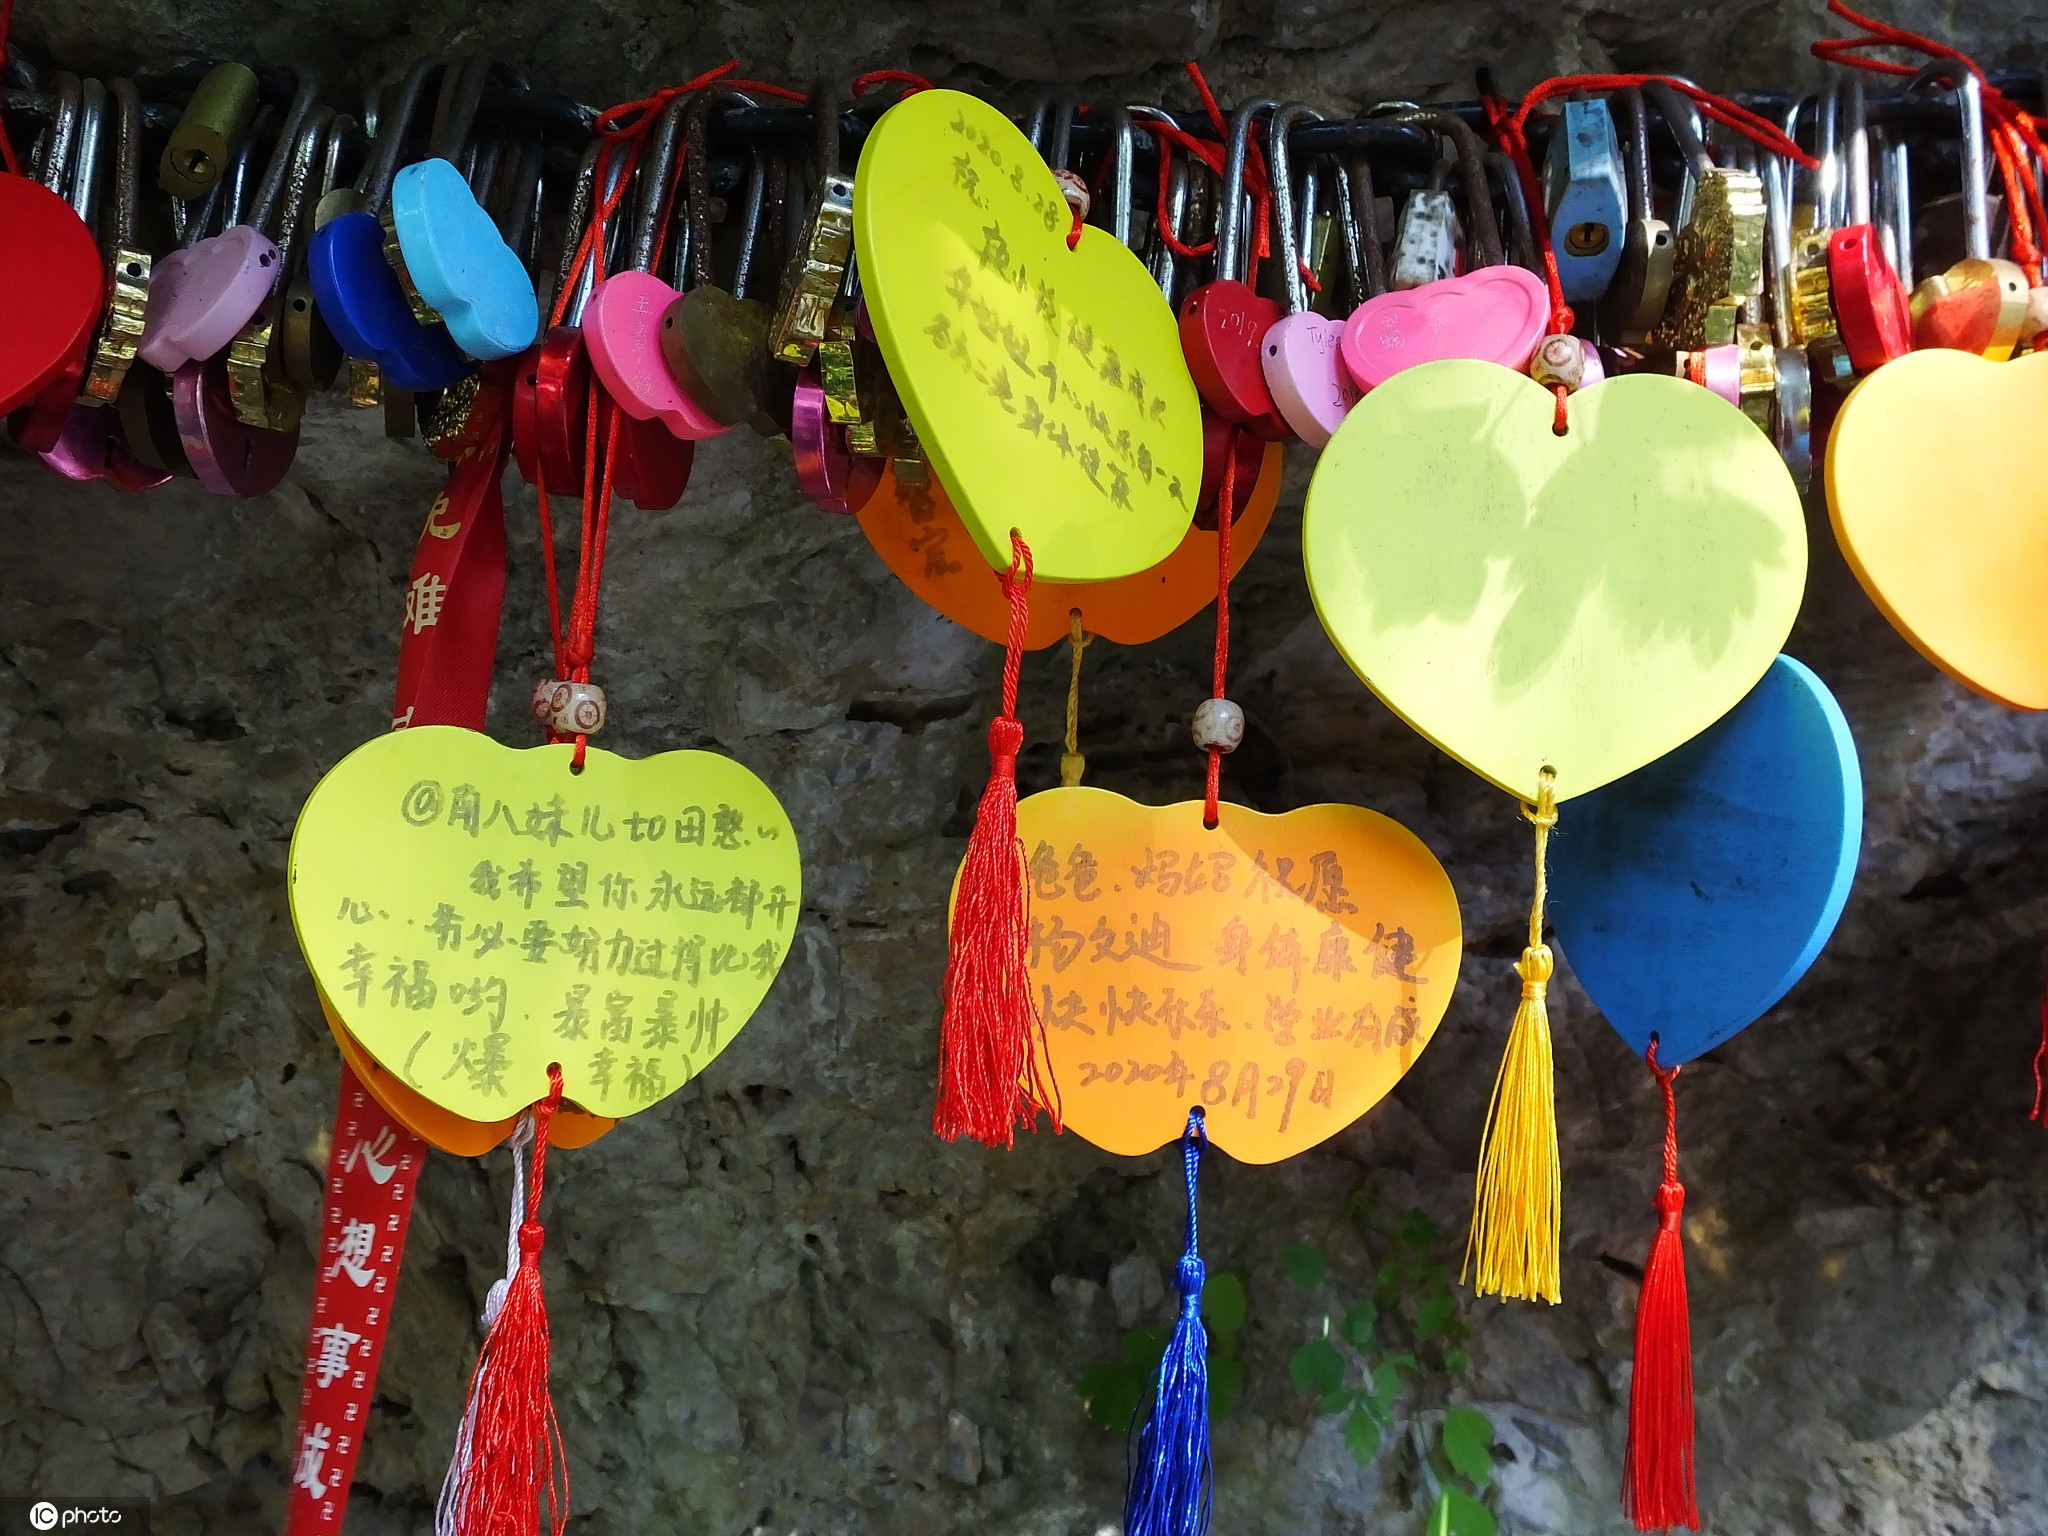 湖北宜昌:三游洞风景区游客悬挂同心锁许愿牌 成亮丽风景